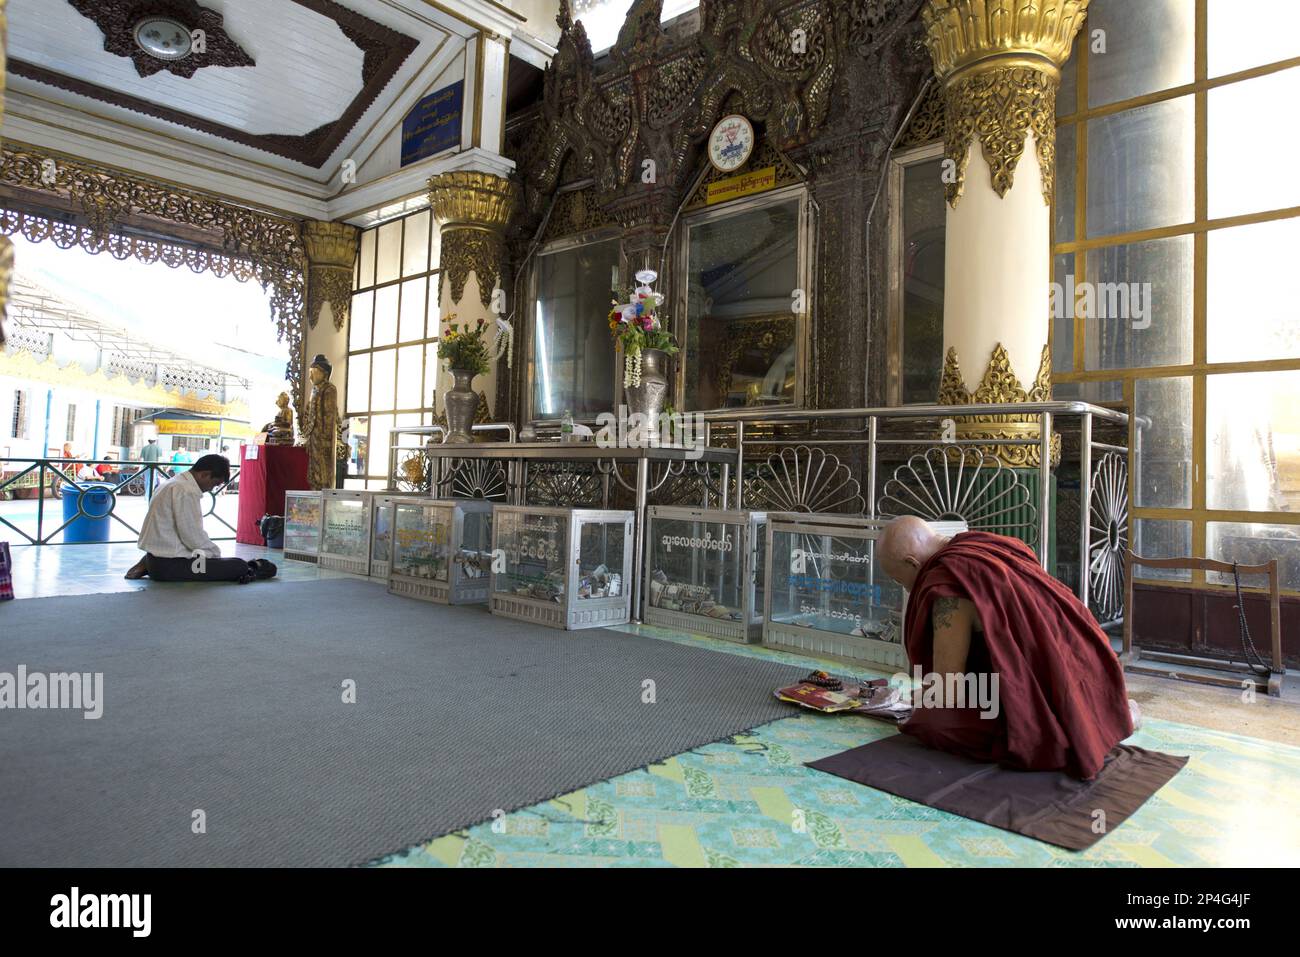 Monk avec tatouage priant dans le temple, Yangon, Myanmar Banque D'Images